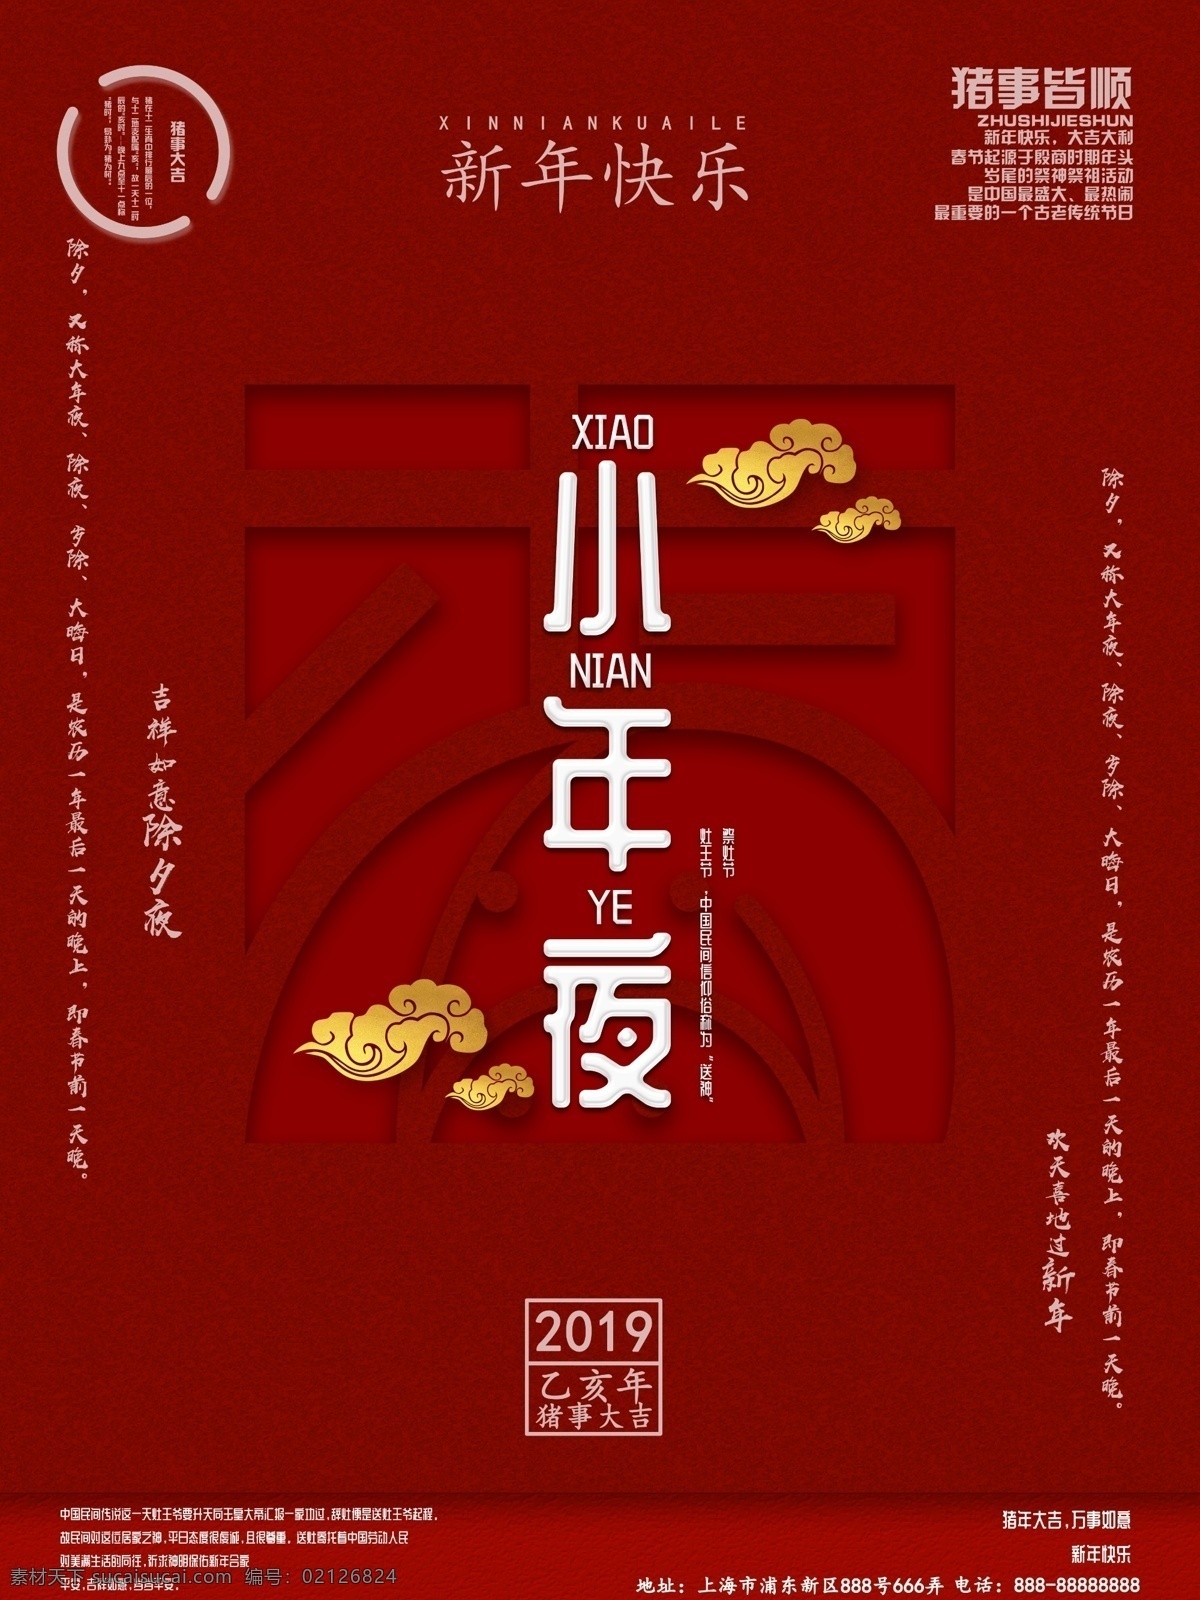 喜庆 精美 排版 小年 节日 海报 精美排版 新年快乐 节日海报 猪年 2019